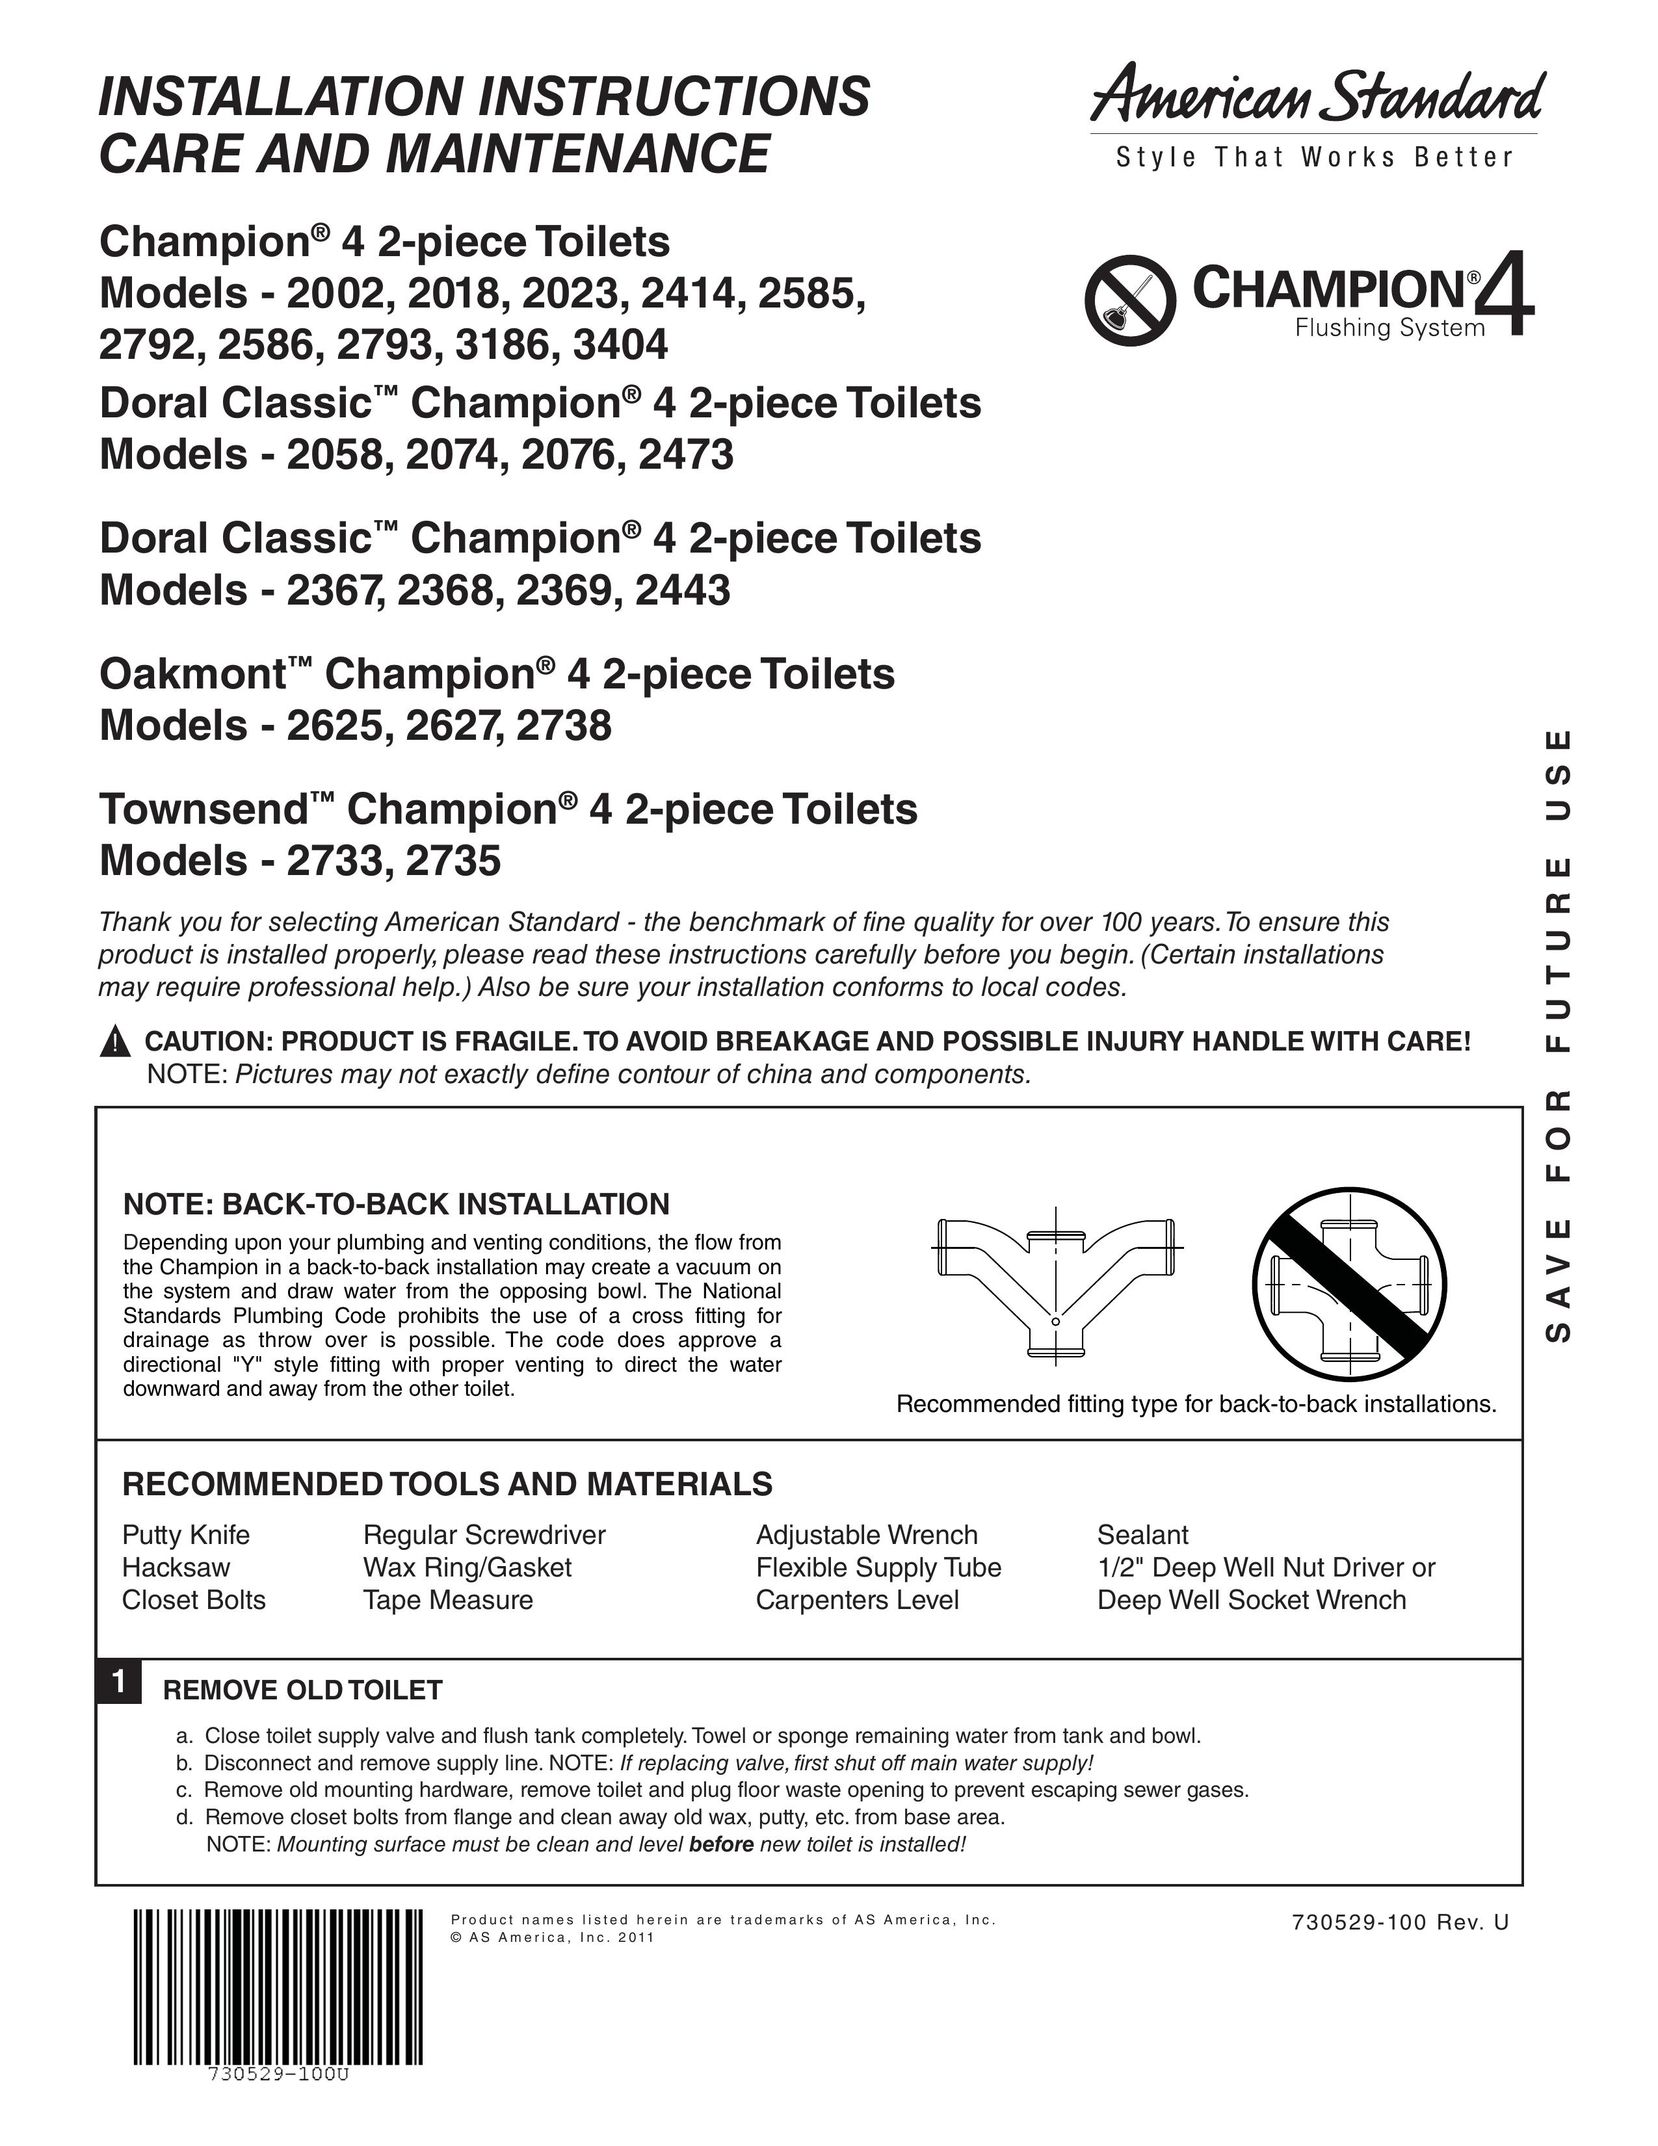 American Standard 2473 Plumbing Product User Manual